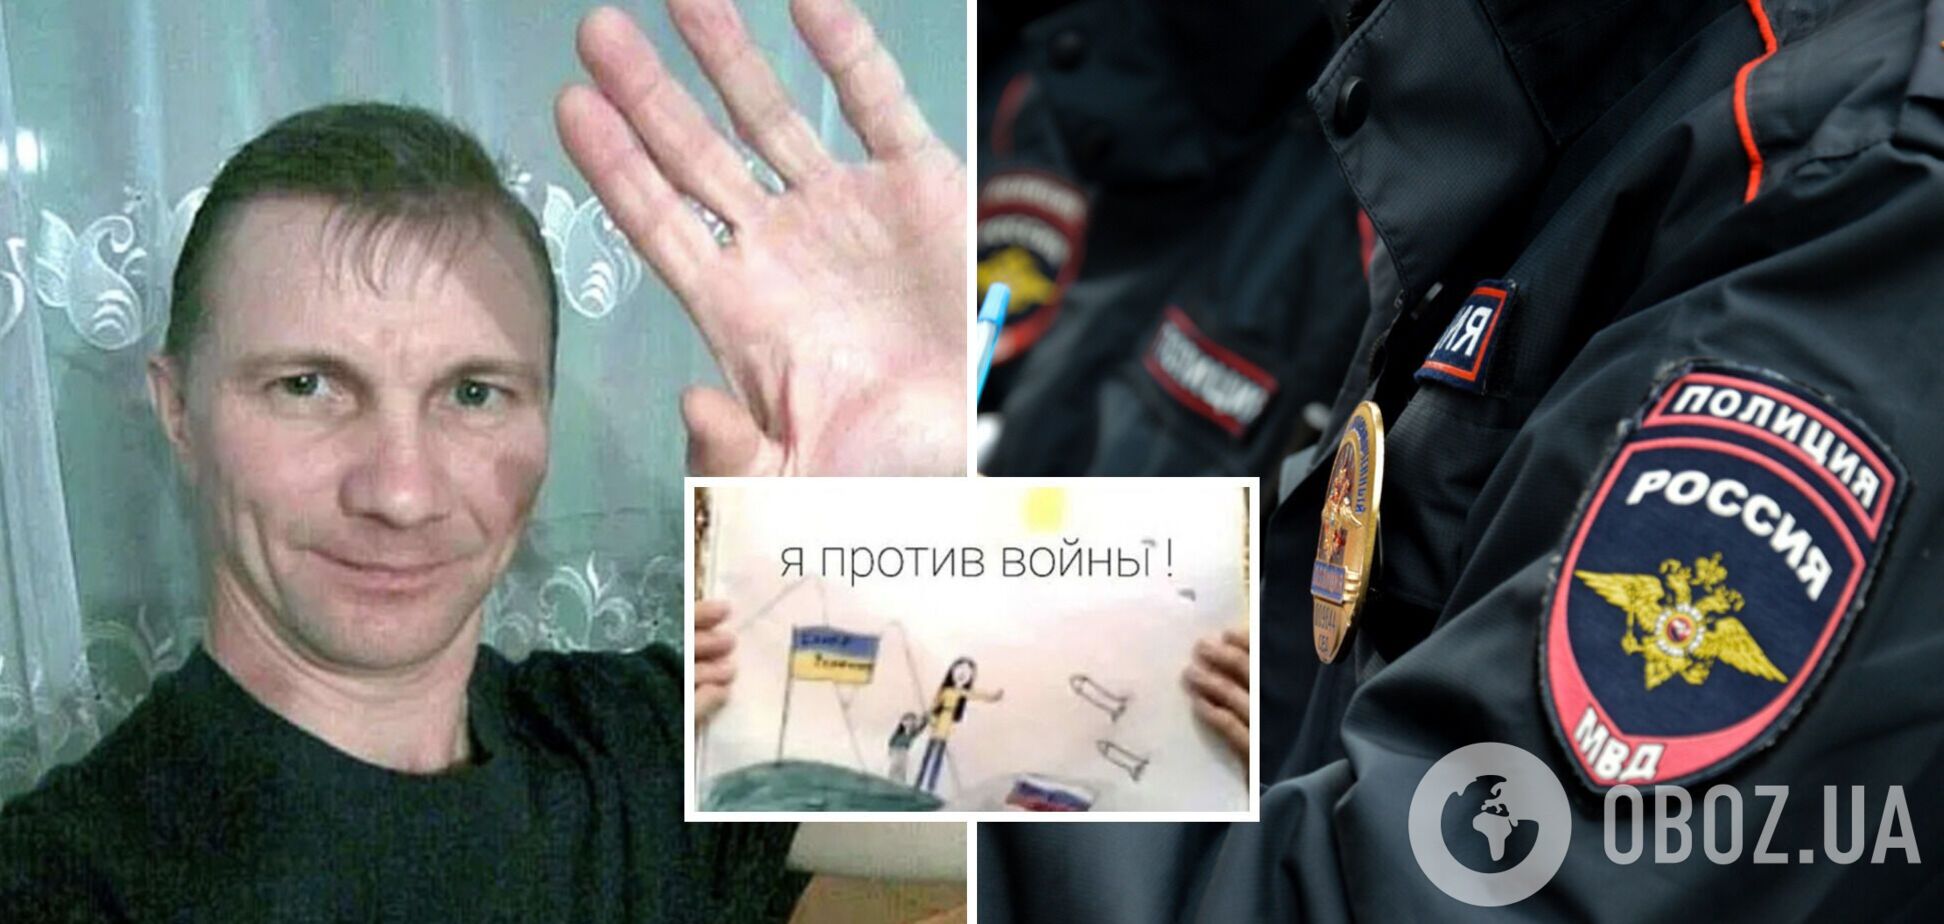 У Росії затримали батька дівчинки, яка намалювала антивоєнний малюнок: дитину вже передали до притулку. Відео 